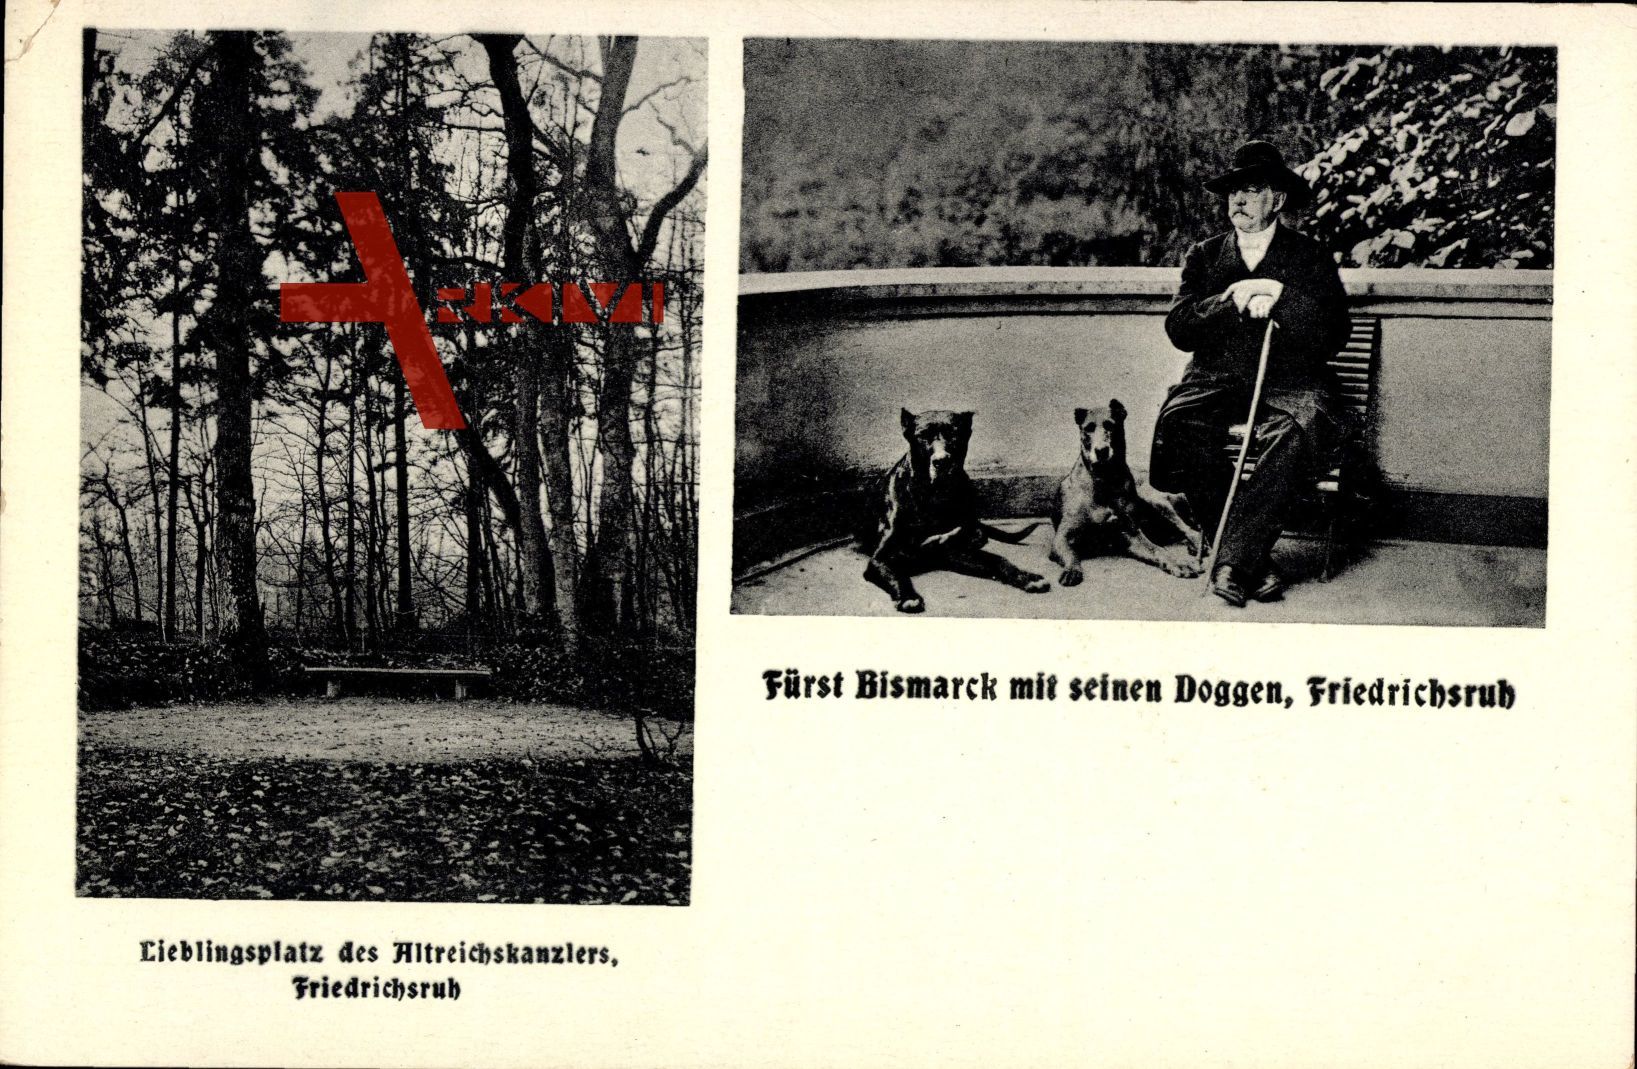 Friedrichsruh Aumühle, Fürst Bismarck mit seinen Doffen, Lieblingsplatz